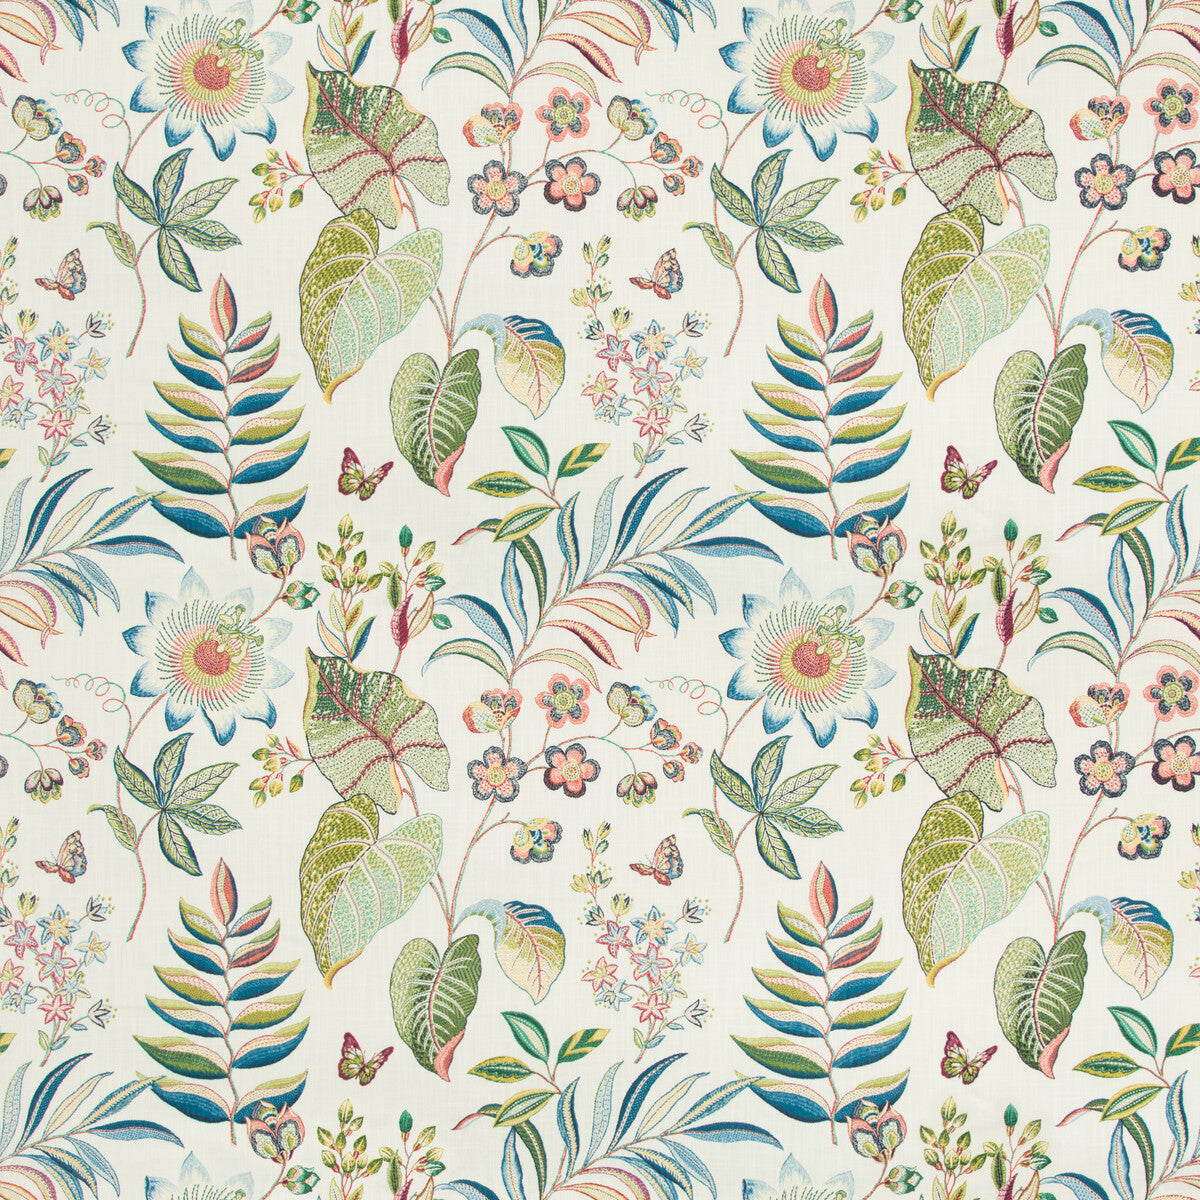 Bogor fabric in peacock color - pattern BOGOR.1.0 - by Kravet Basics